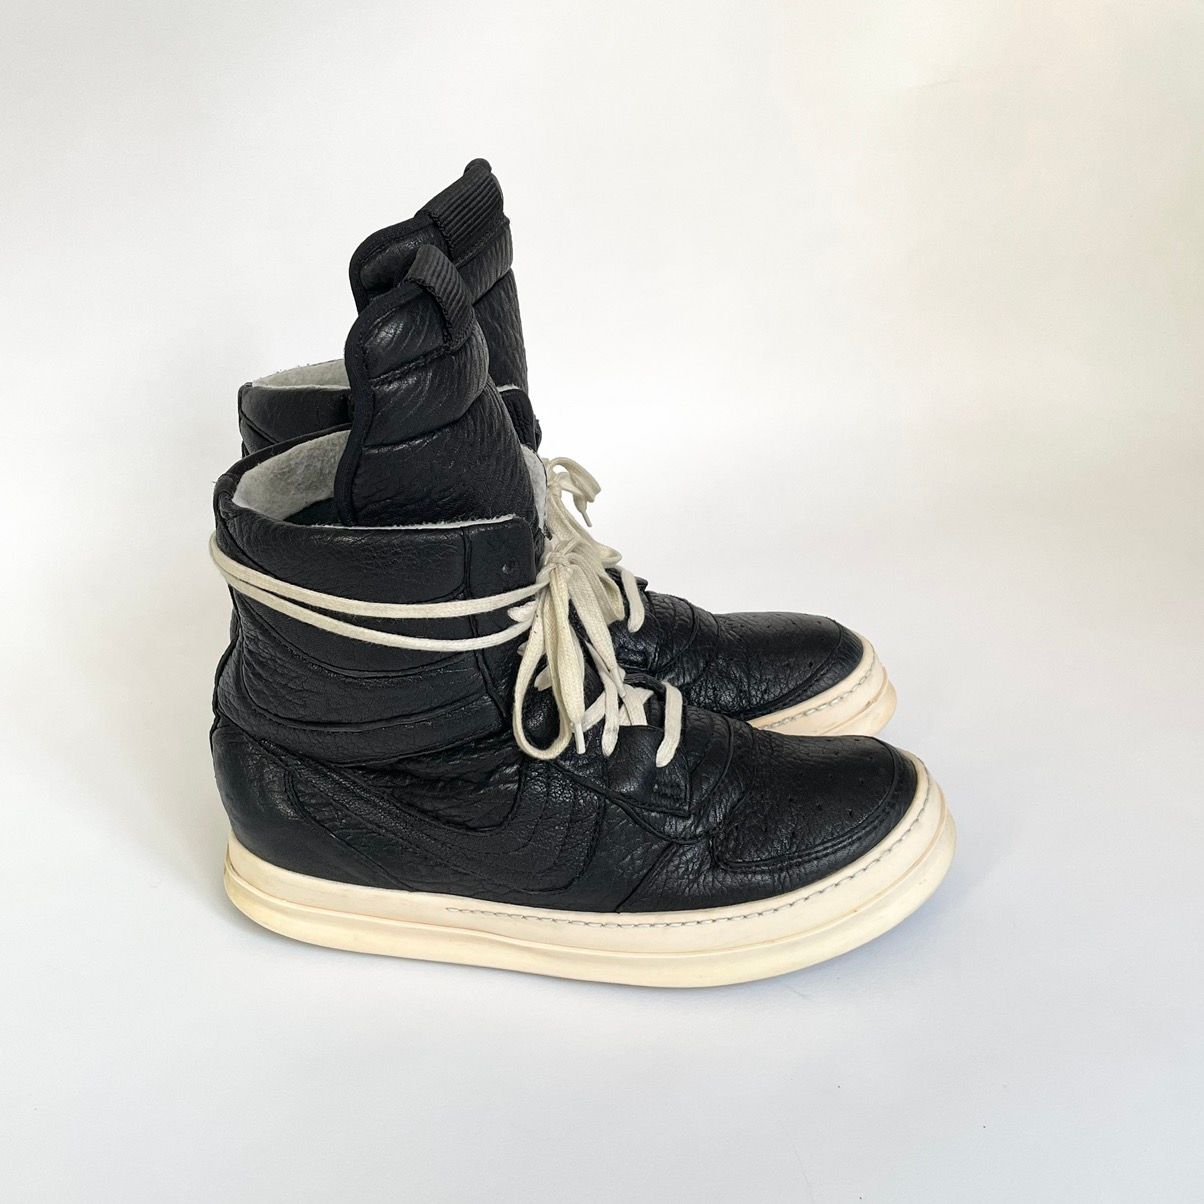 Rick Owens F/W 06 ‘Dustulator’ Black Dunk Sneakers | Grailed